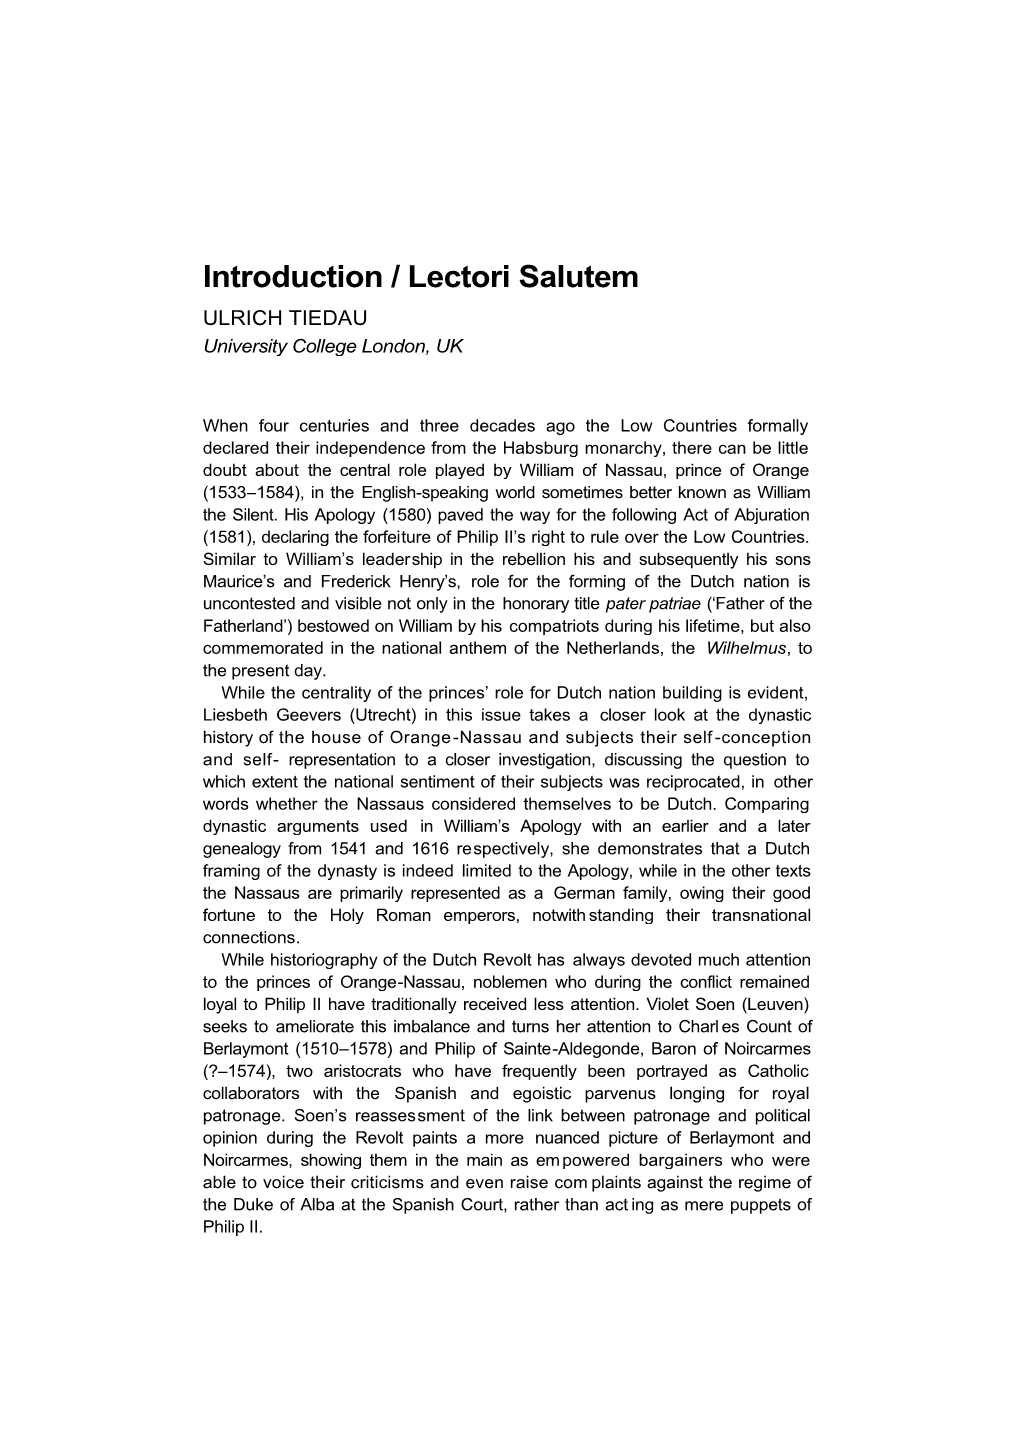 Introduction/Lectori Salutem